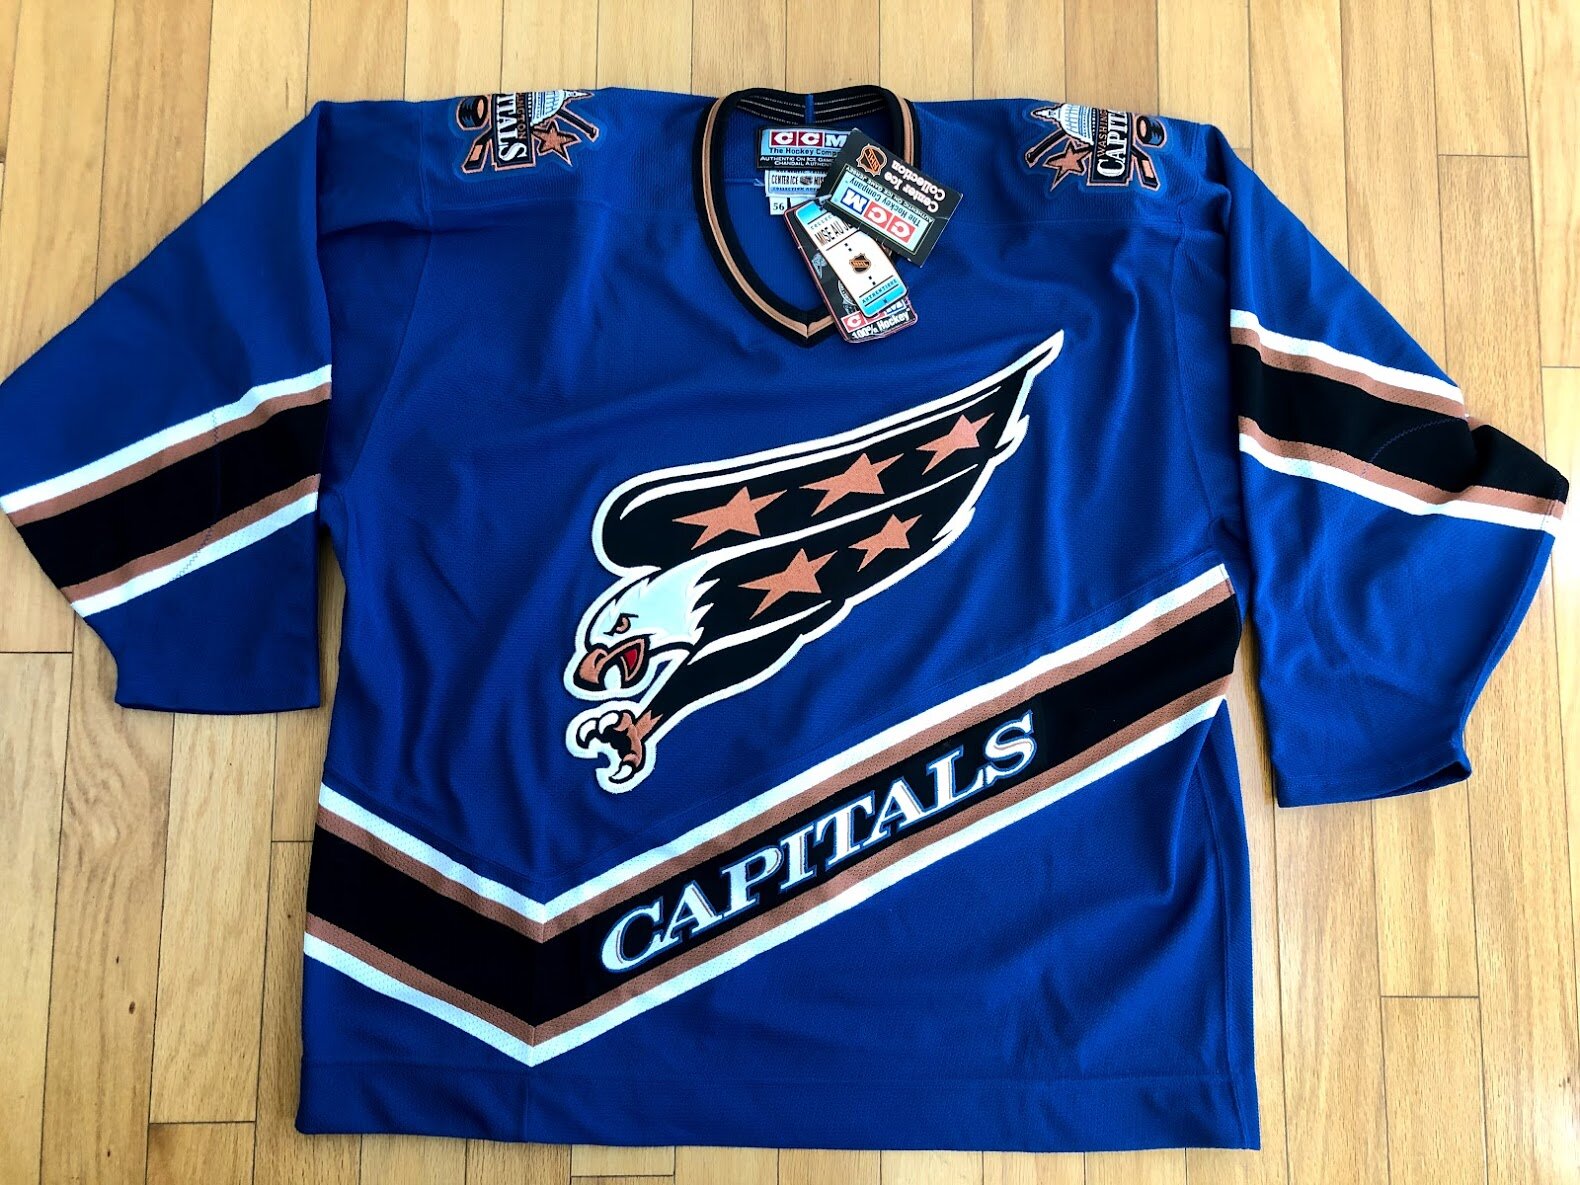 capitals eagle jersey